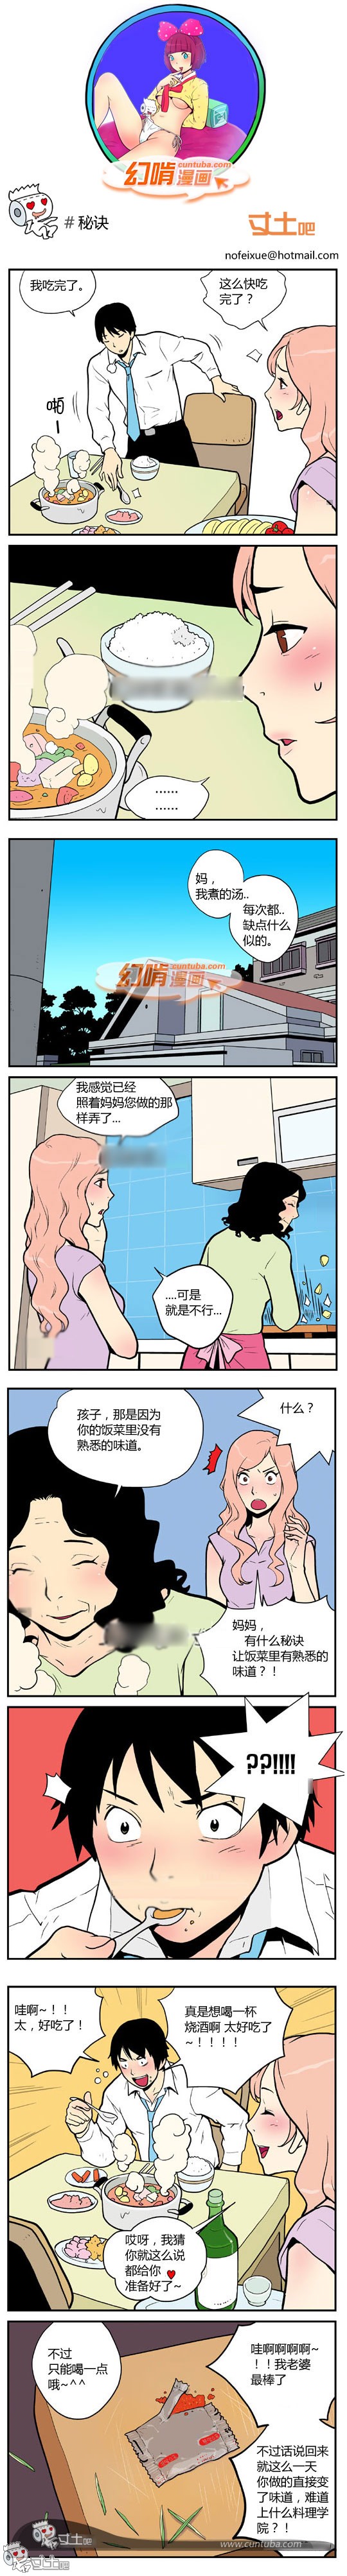 幻啃漫画秘诀